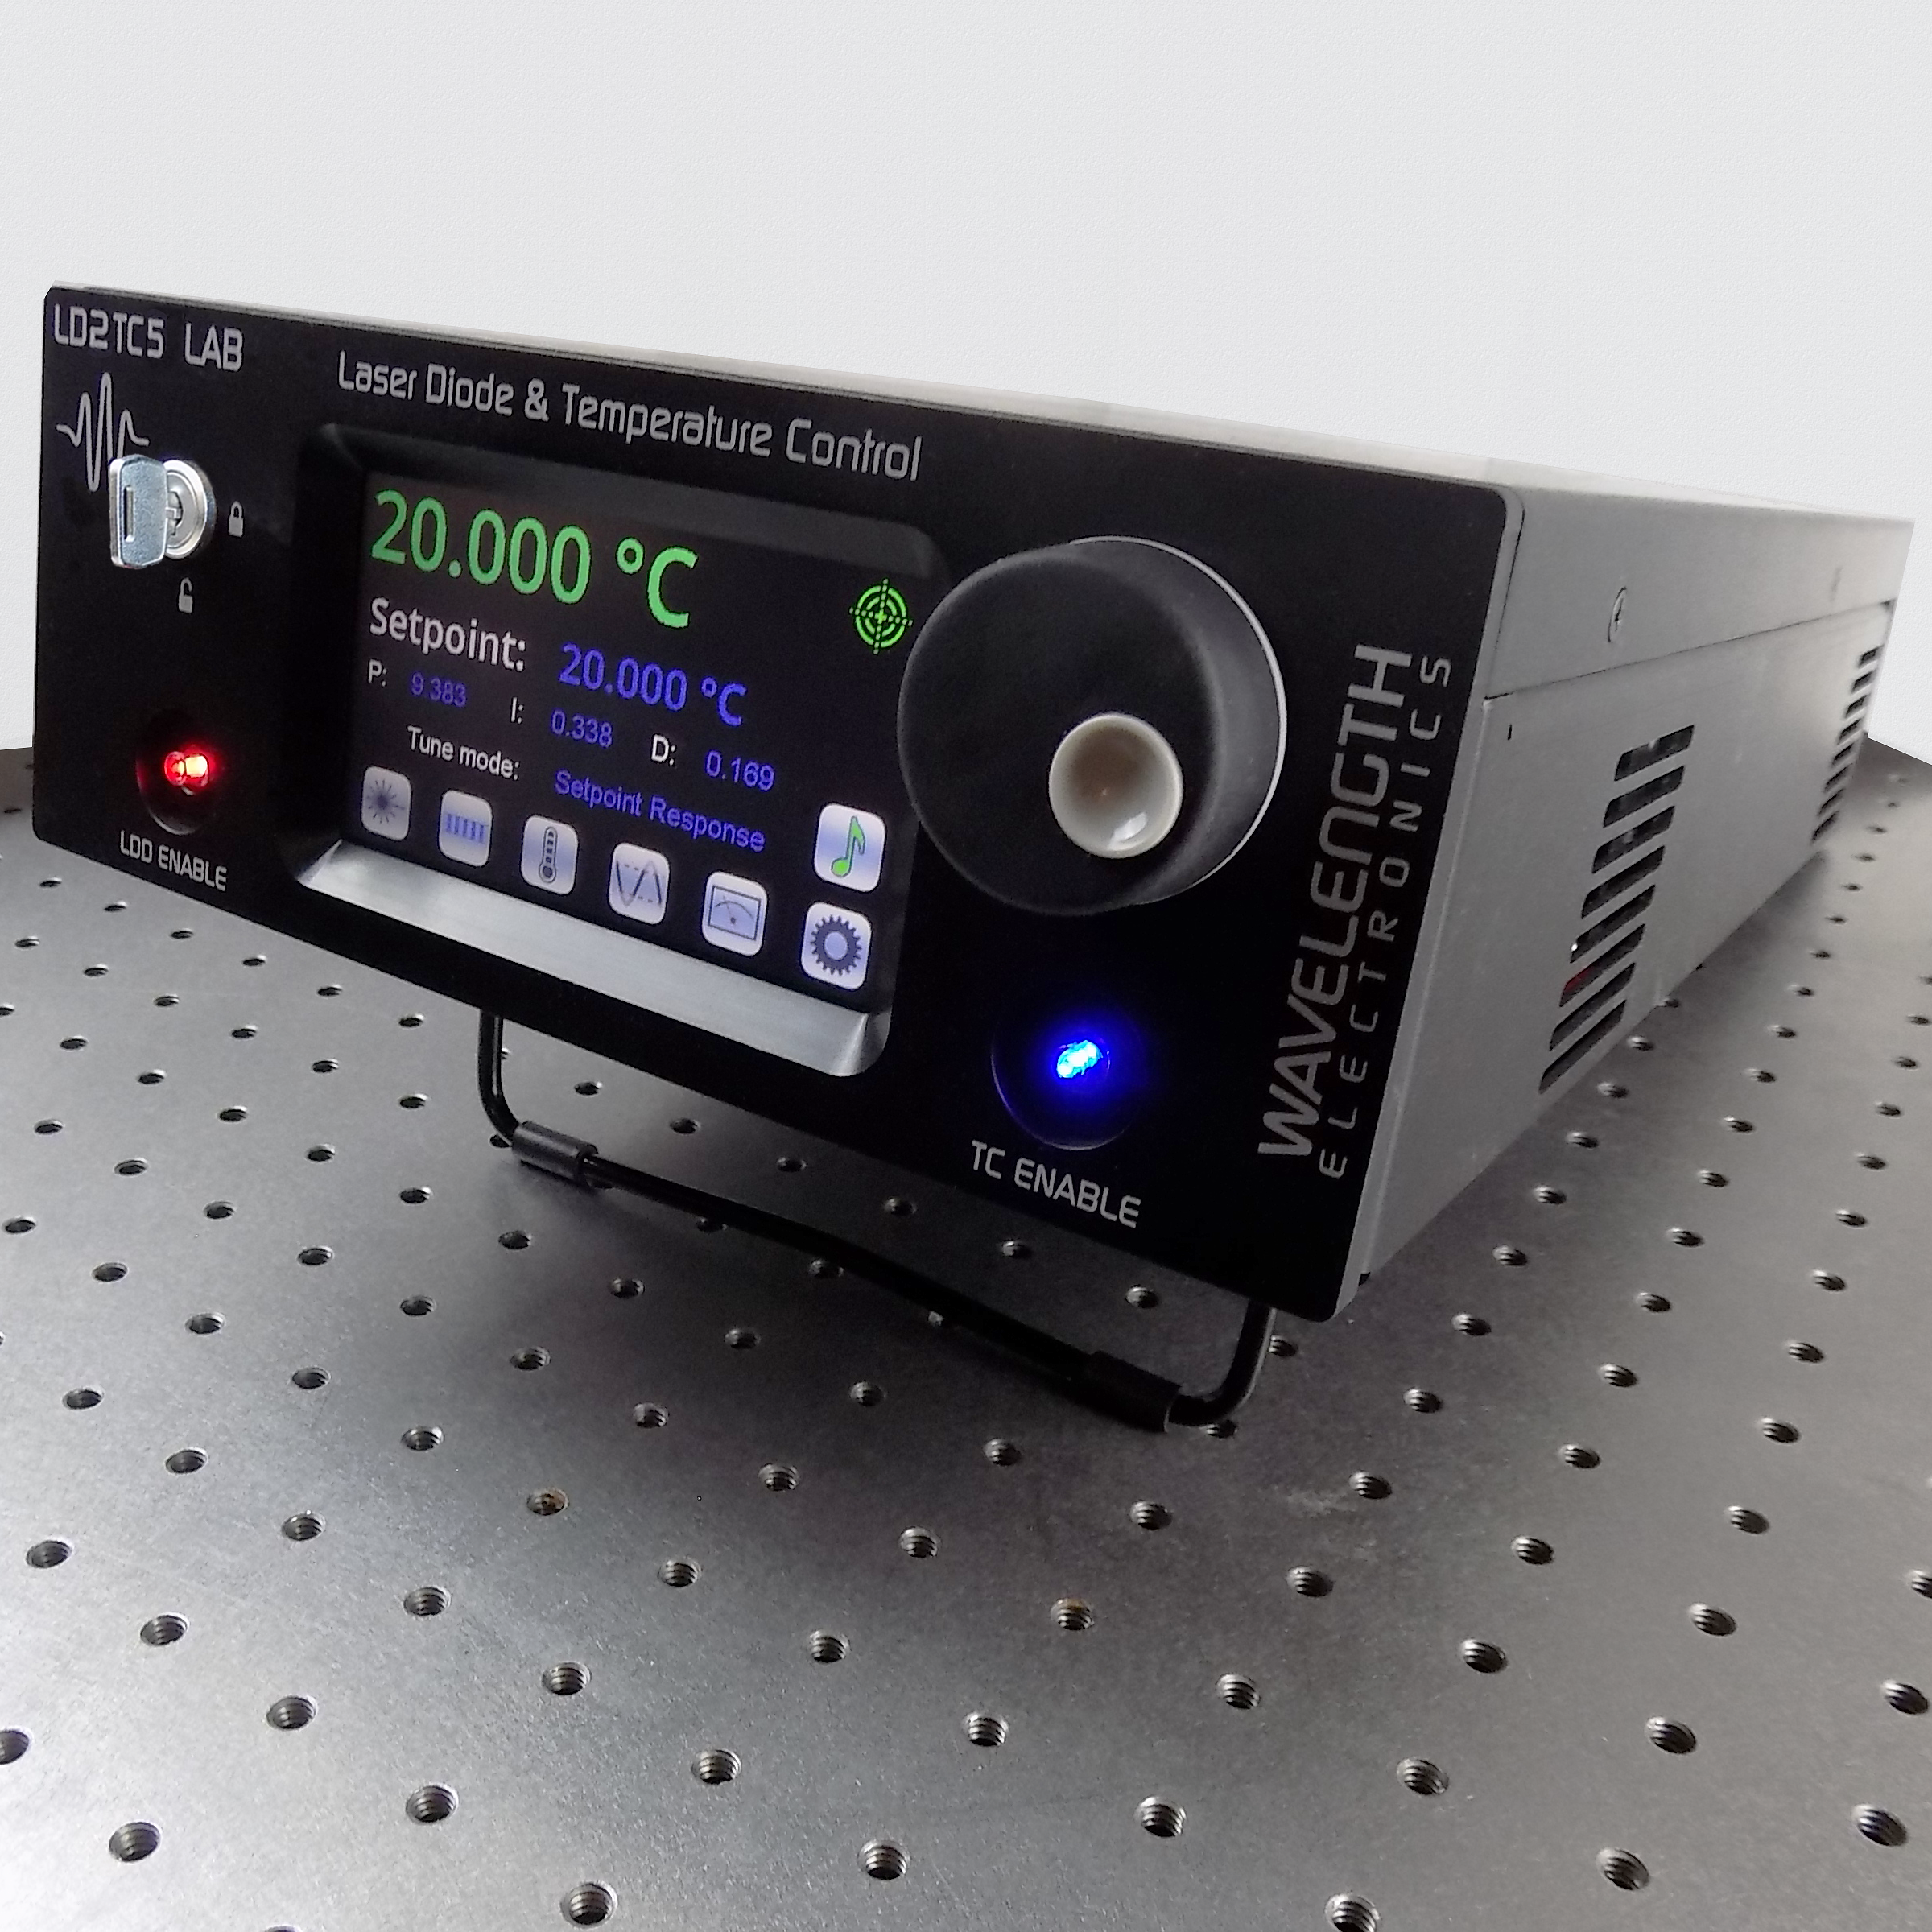 LD2TC5 LAB Series Công cụ kiểm soát nhiệt độ và điốt laze